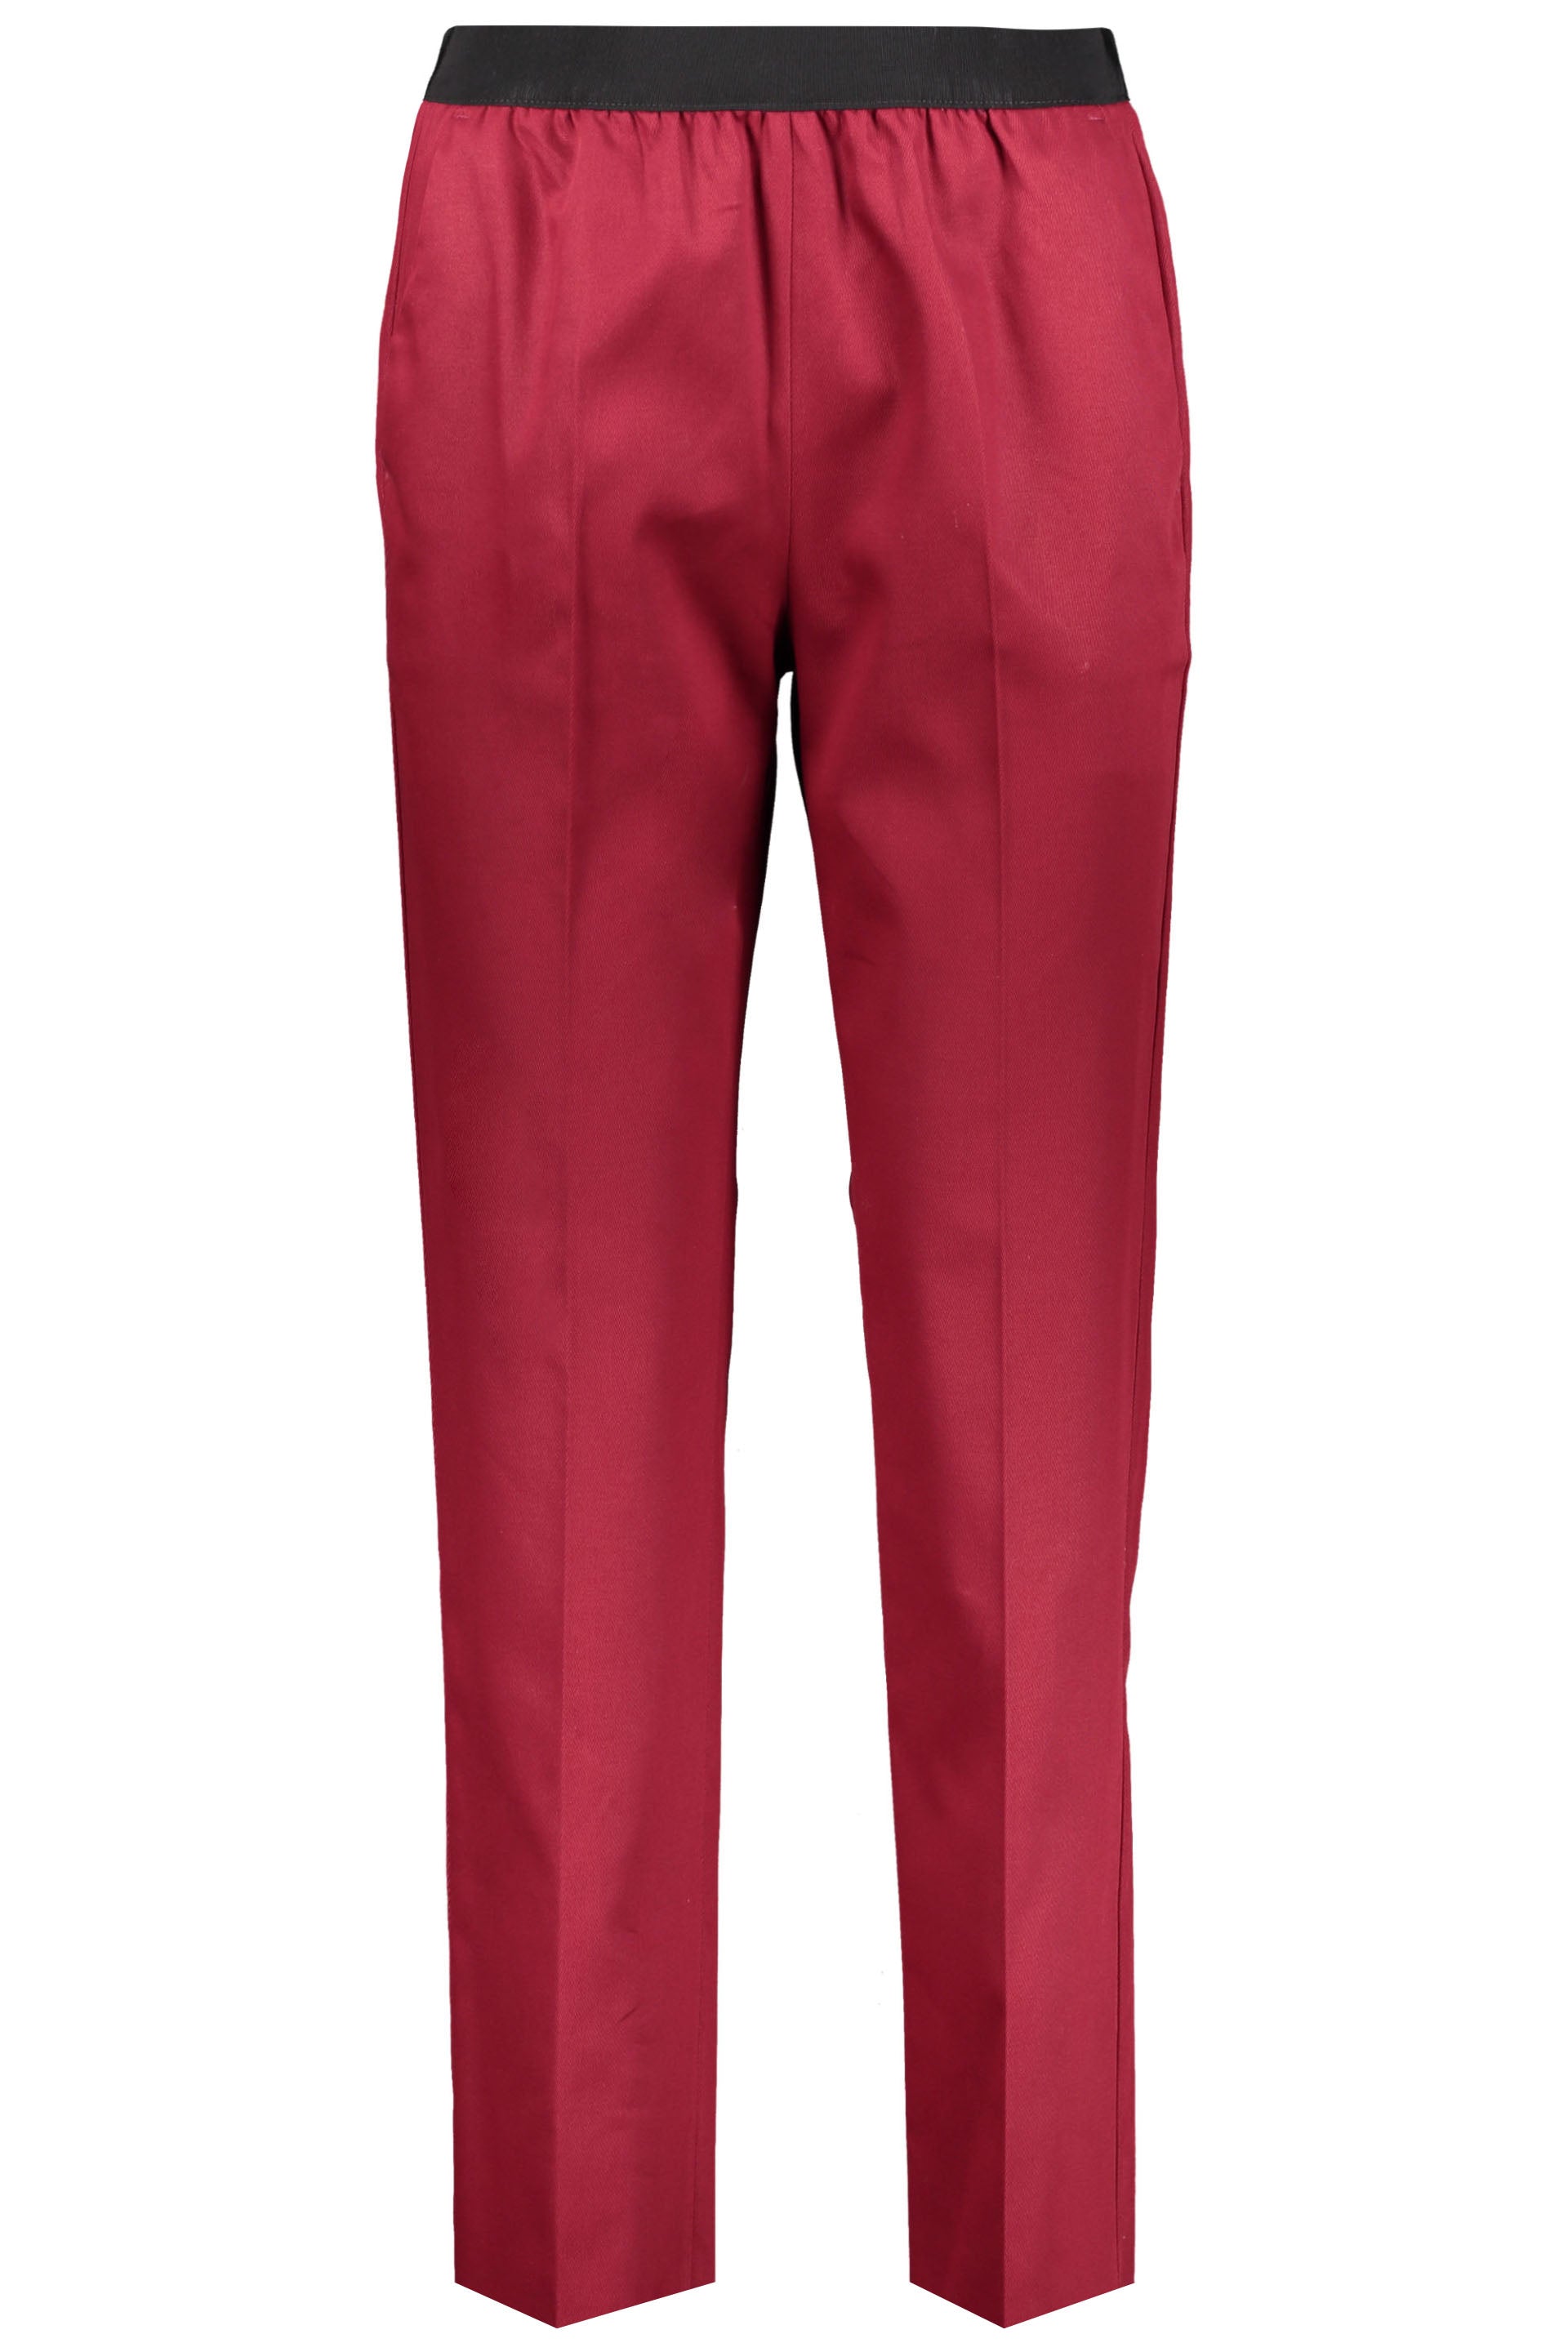 Agnona-OUTLET-SALE-Cotton-trousers-Hosen-38-ARCHIVE-COLLECTION_112c0250-a933-4eb2-bce6-1c50c0e9385e.jpg